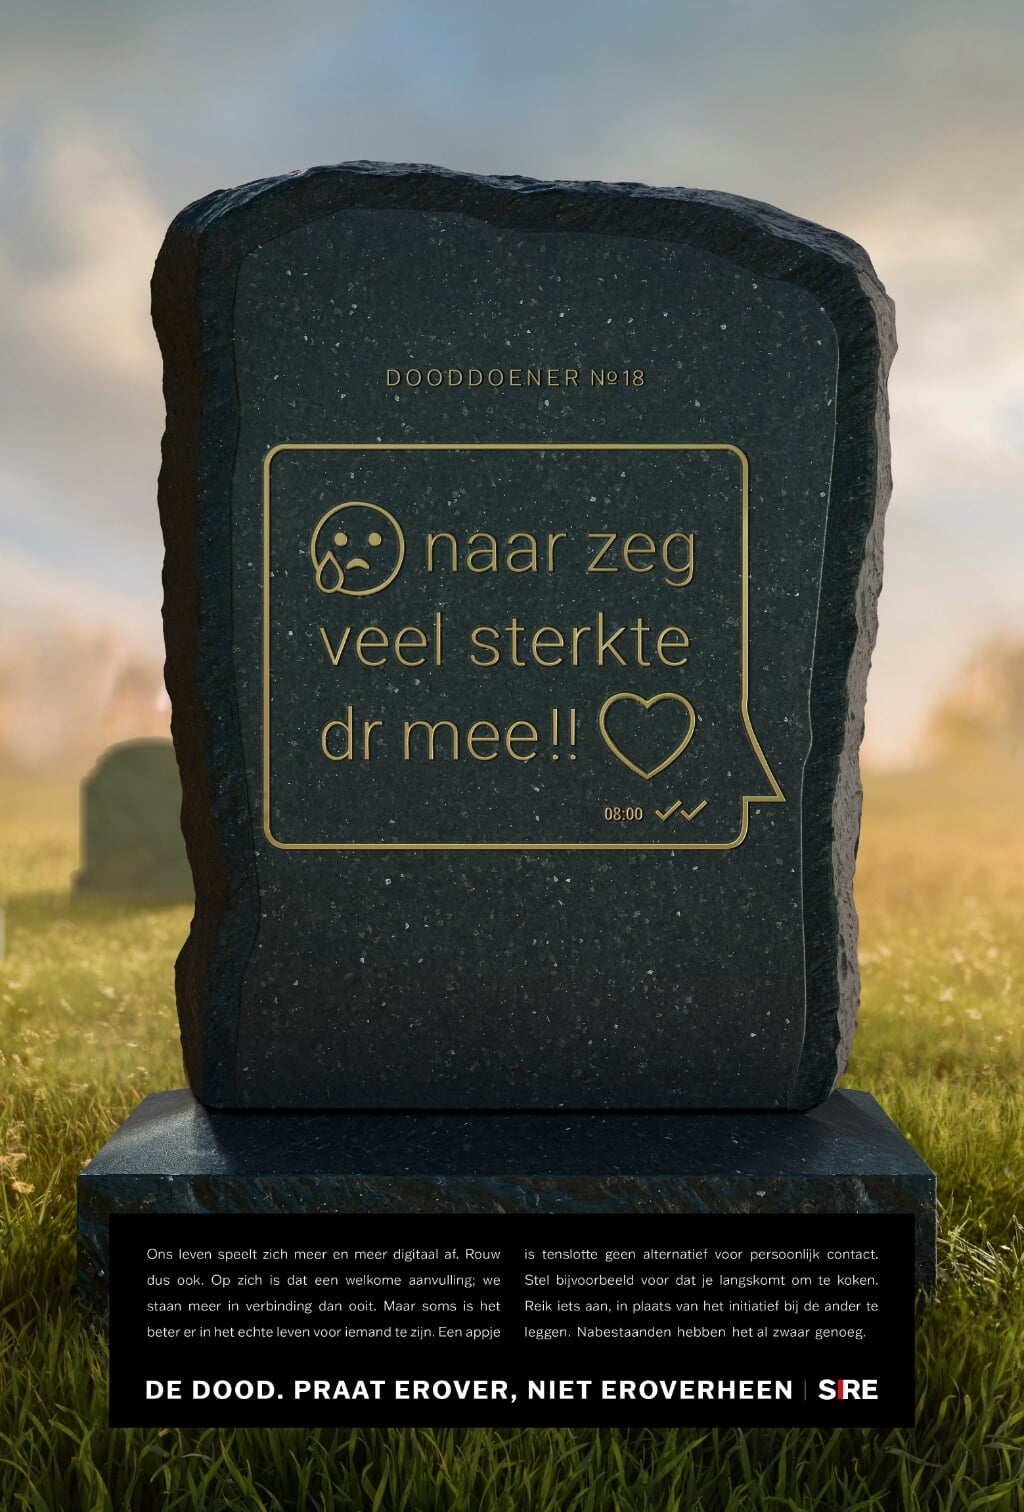 Eén van de dooddoeners die vaak wordt gebruikt. Bekijk ze allemaal via www.dedoodpraaterover.sire.nl.